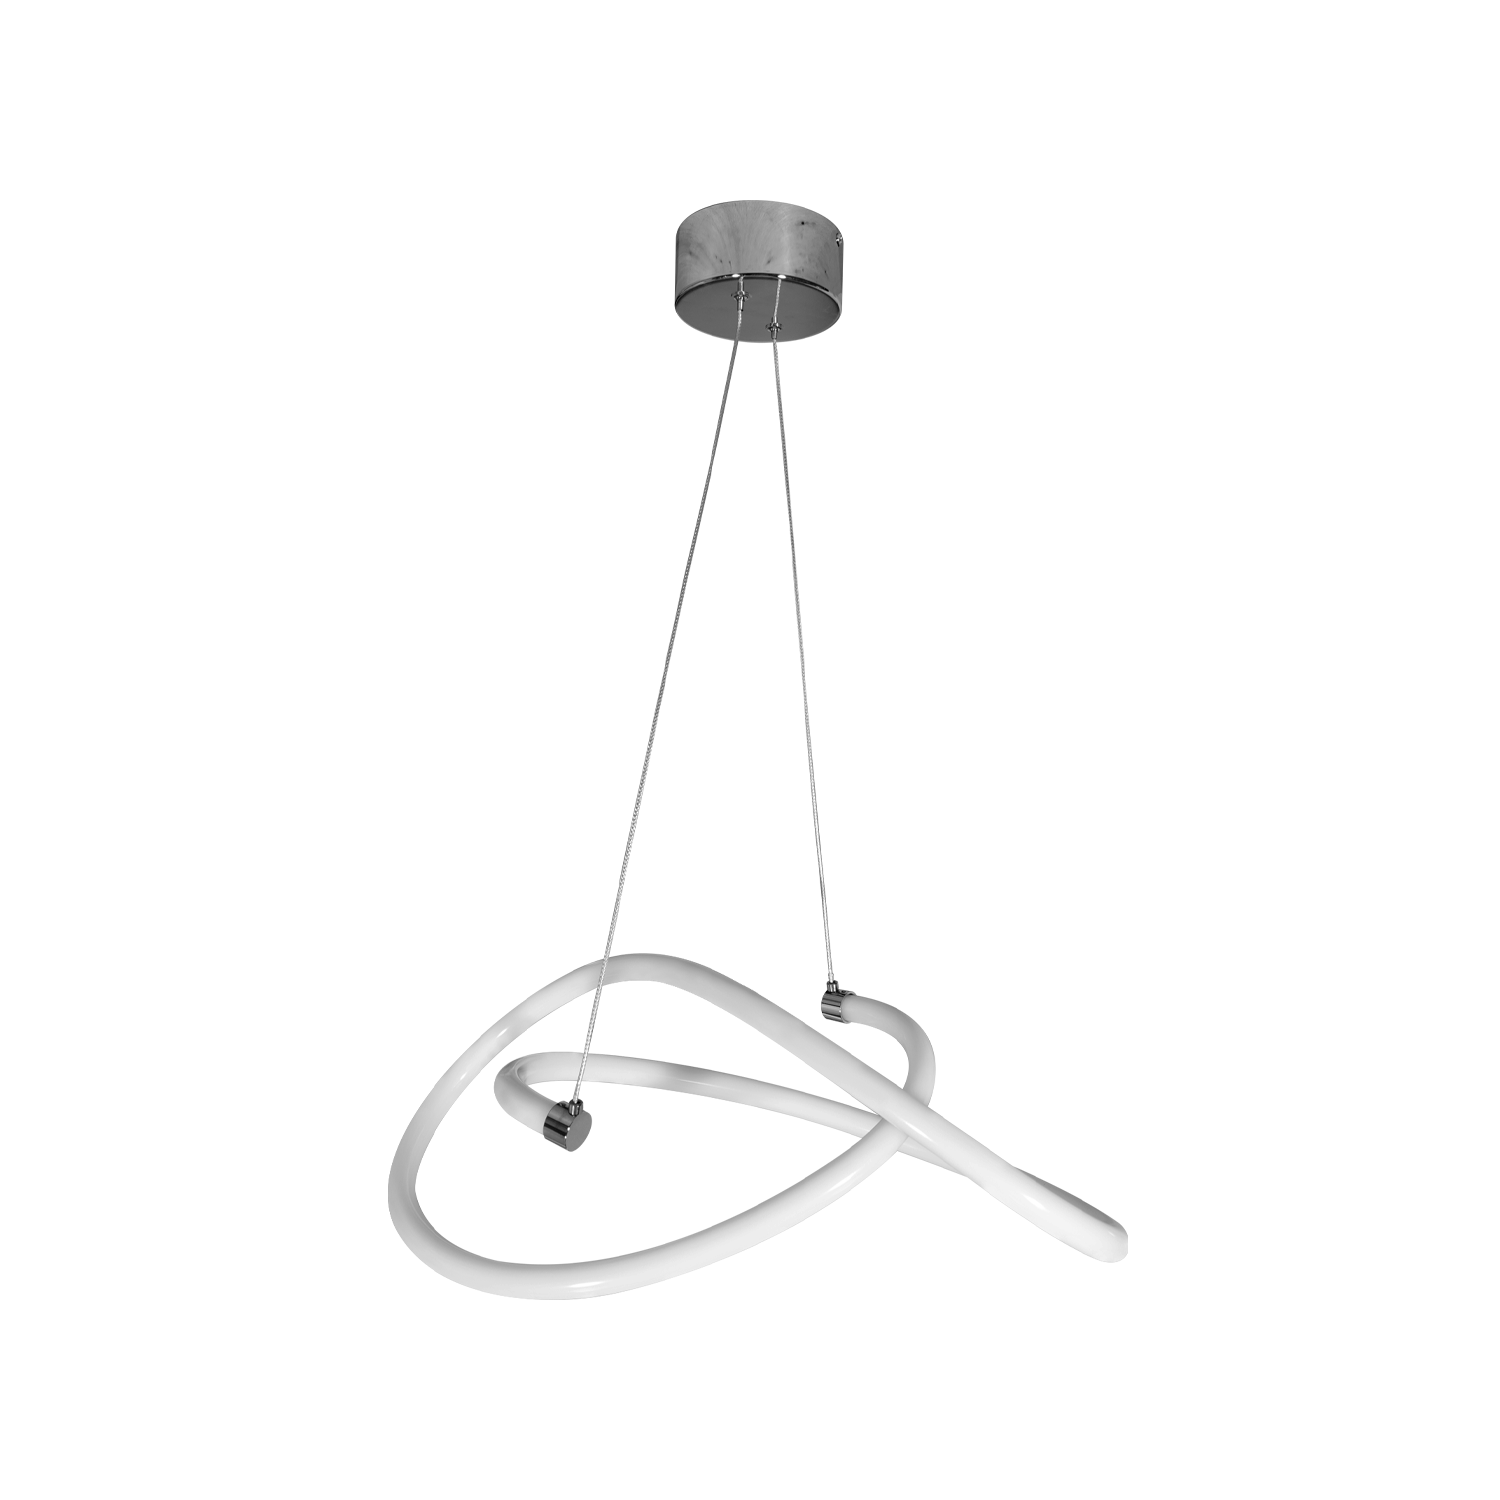 Luminaria LED decorativa de suspender, uso interior, DL-2420.CR Dekor